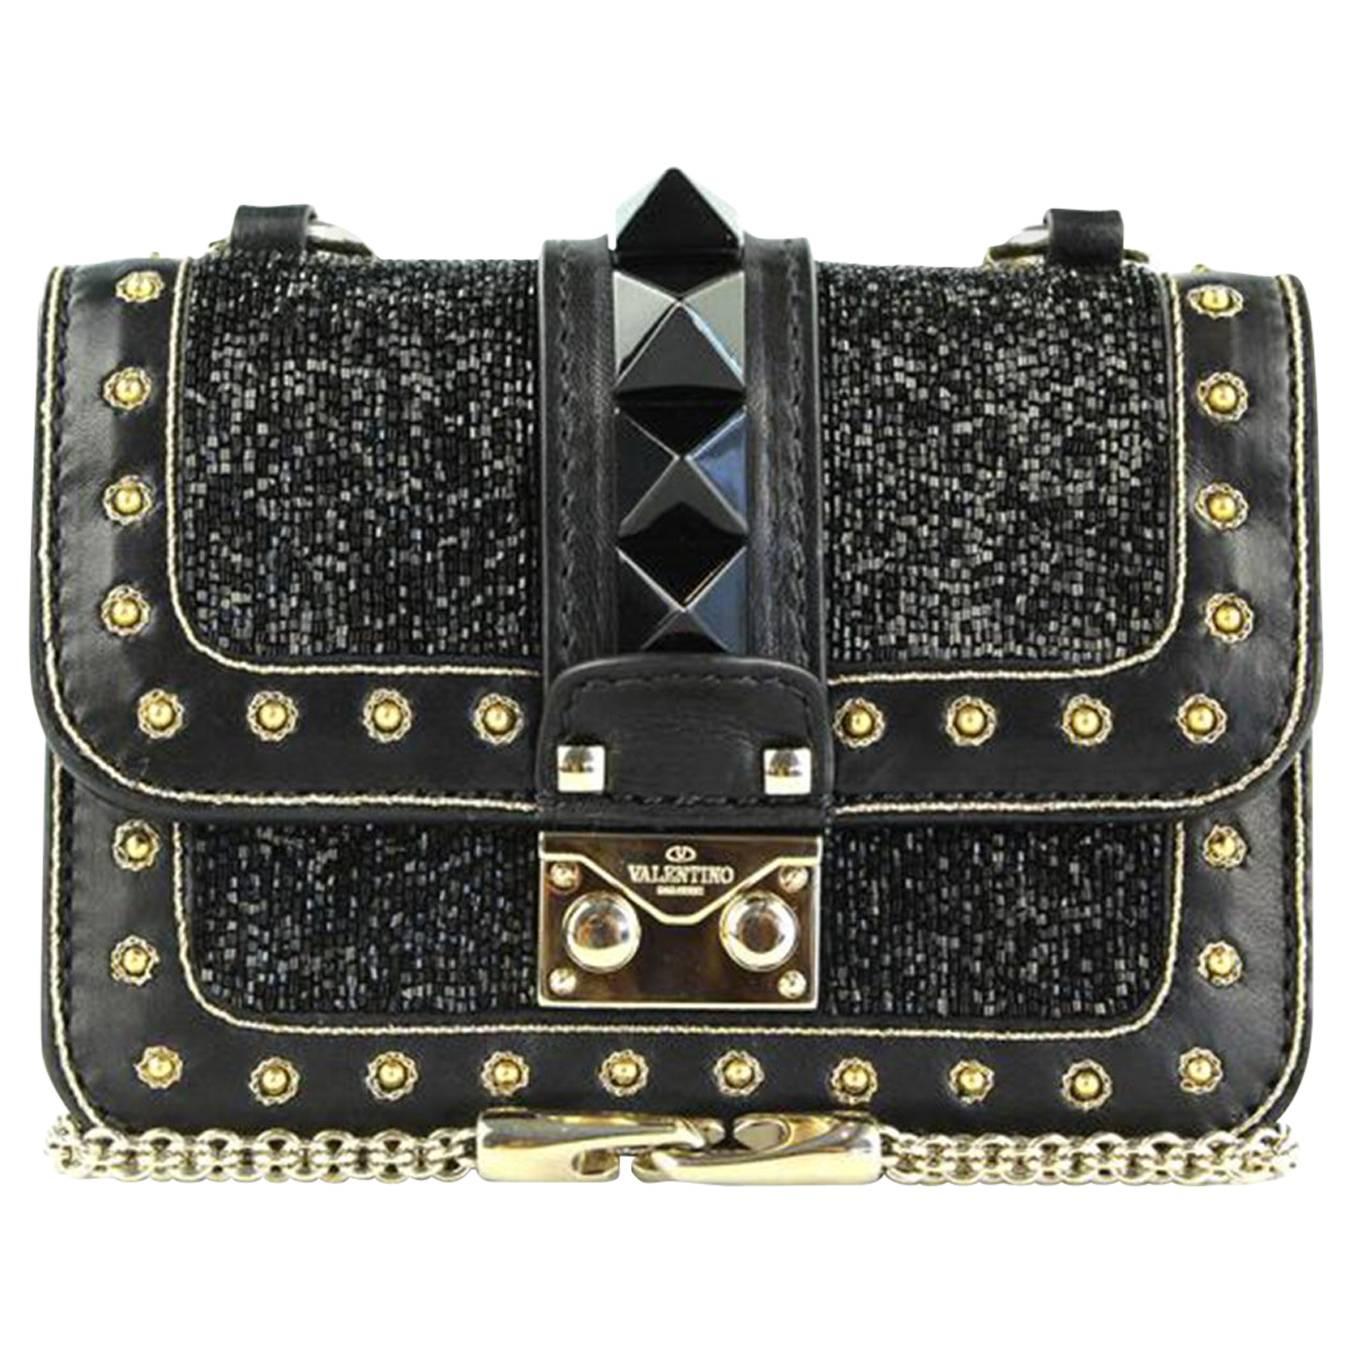 Valentino Rockstud Lock Mini Bead Embellished Leather Shoulder Bag